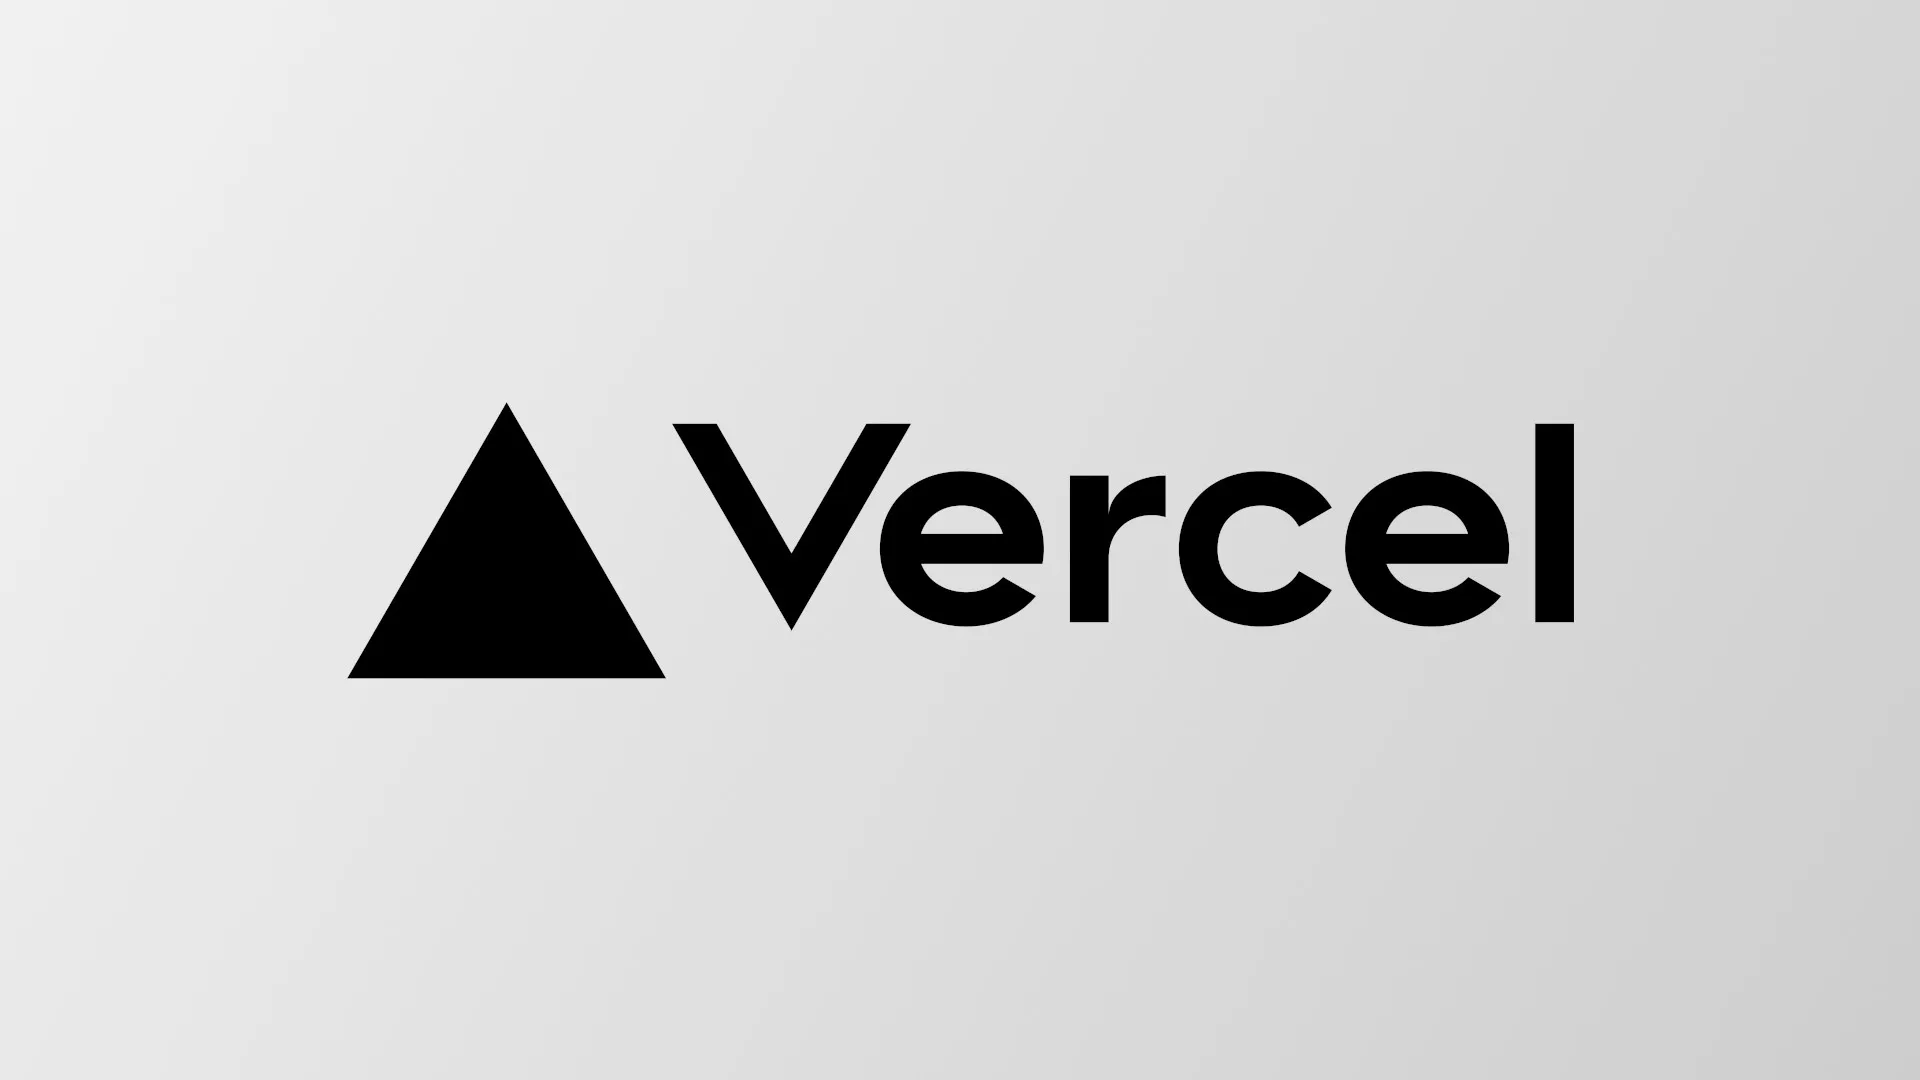 The Vercel logo